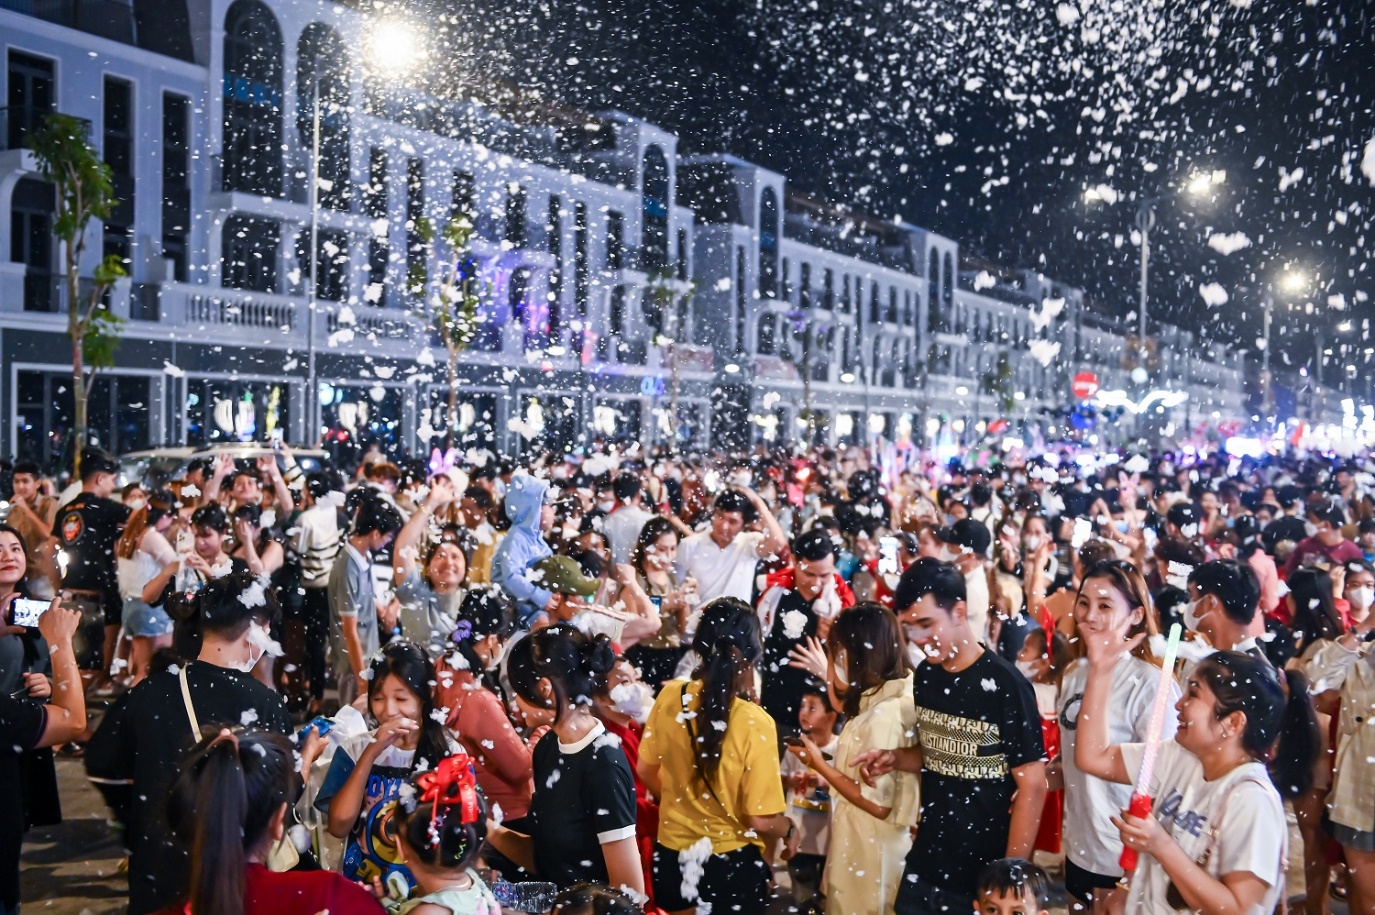 Sắc màu Noel lung linh trong chuỗi sự kiện lễ hội quy mô ở Long An - Ảnh 4.